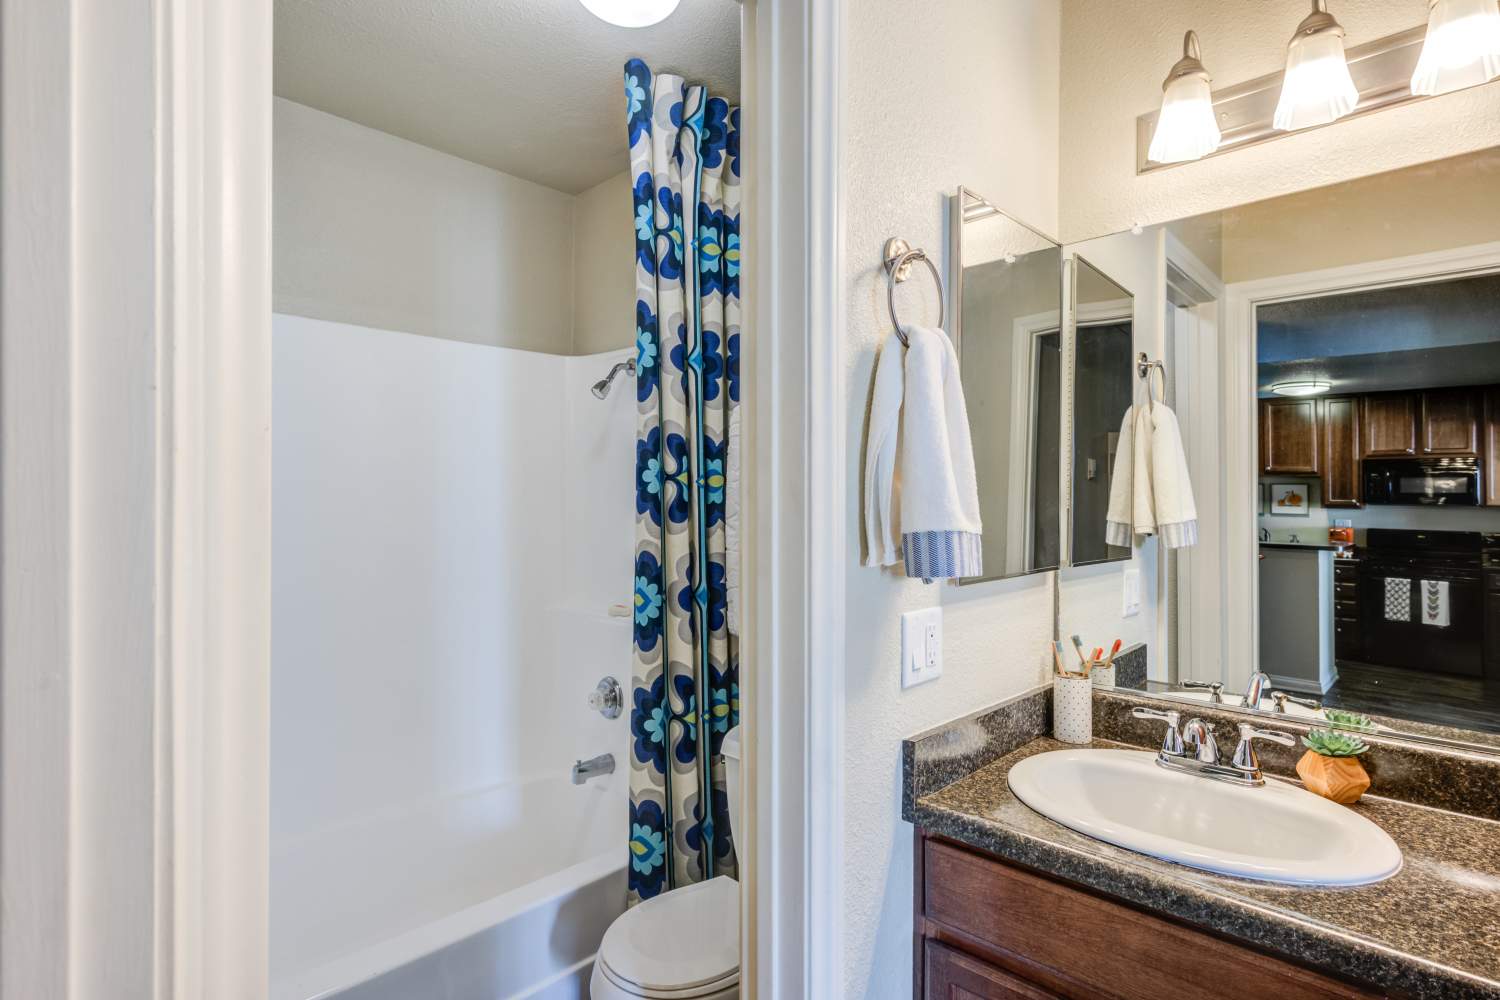 UCA Apartment Homes remodeled bathroom Fullerton, California